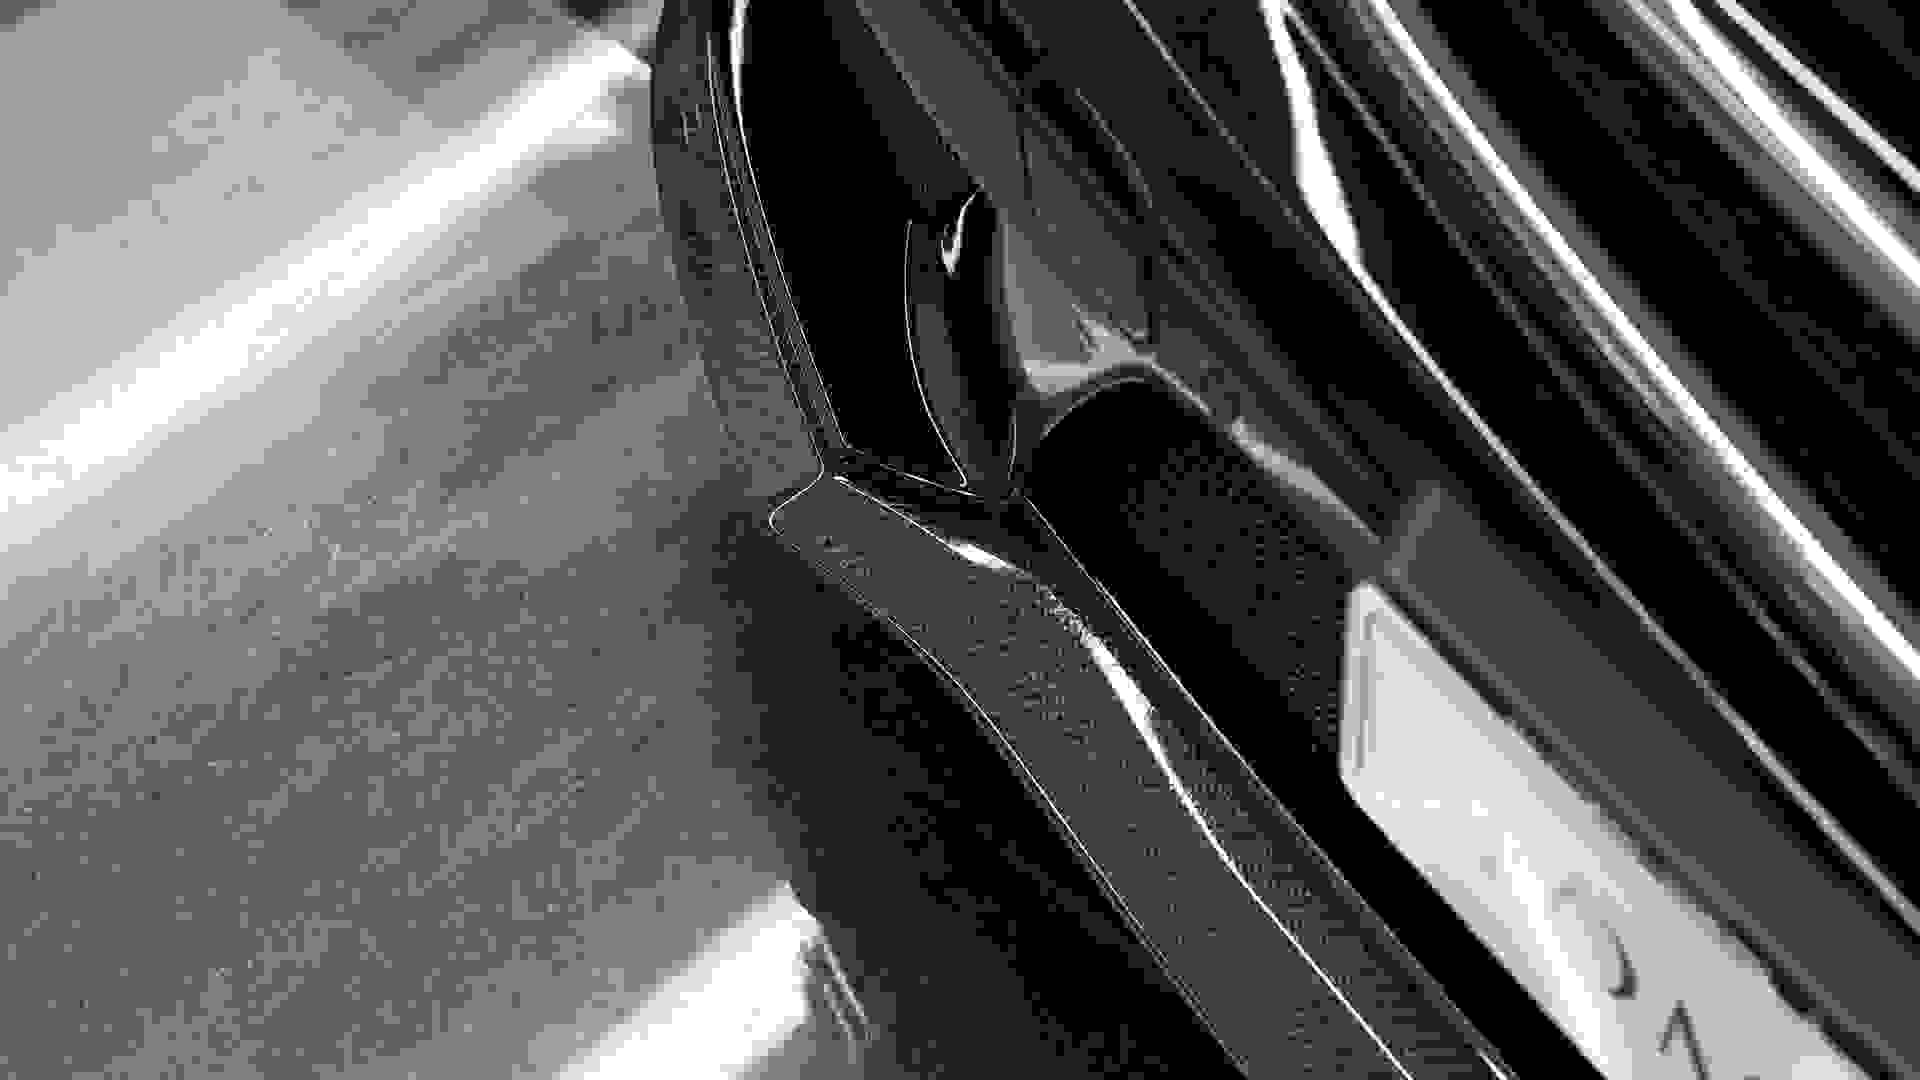 Mercedes-Benz C63 AMG Photo 530b6603-77b1-44a8-b40f-48e3fb9a117d.jpg